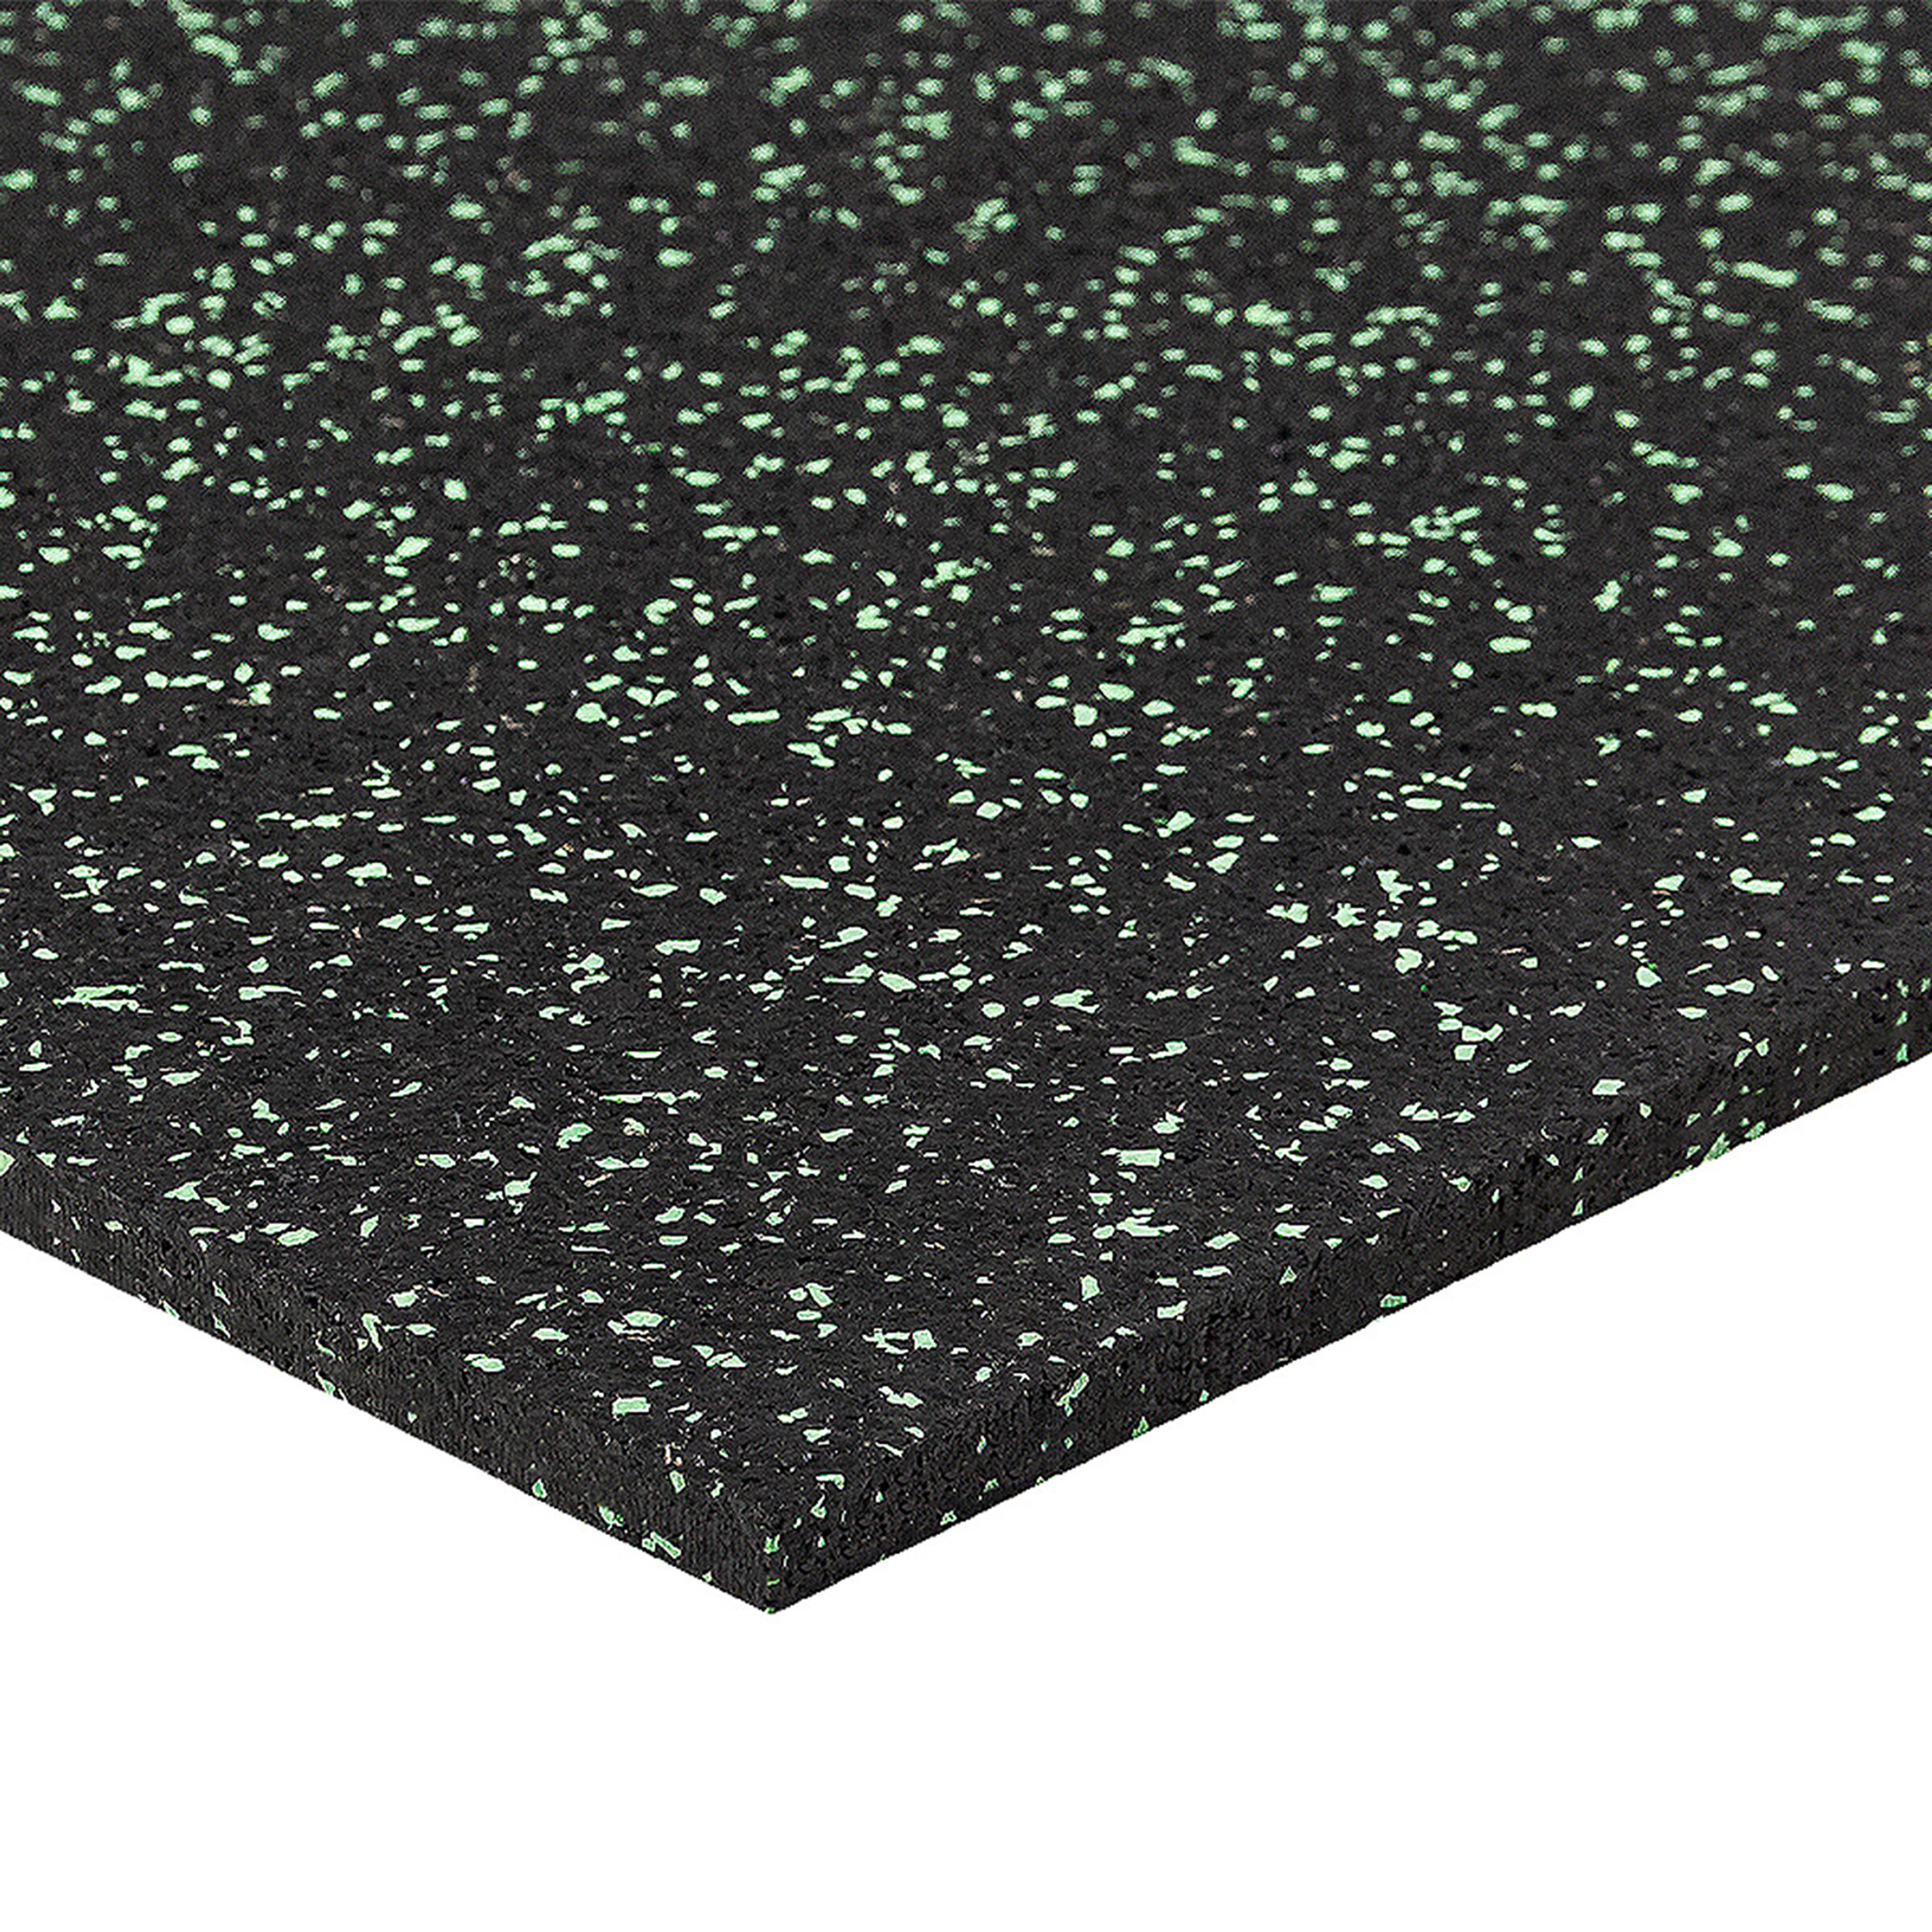 Čierno-zelená gumová modulová puzzle dlažba (stred) FLOMA FitFlo SF1050 - dĺžka 50 cm, šírka 50 cm, výška 1 cm